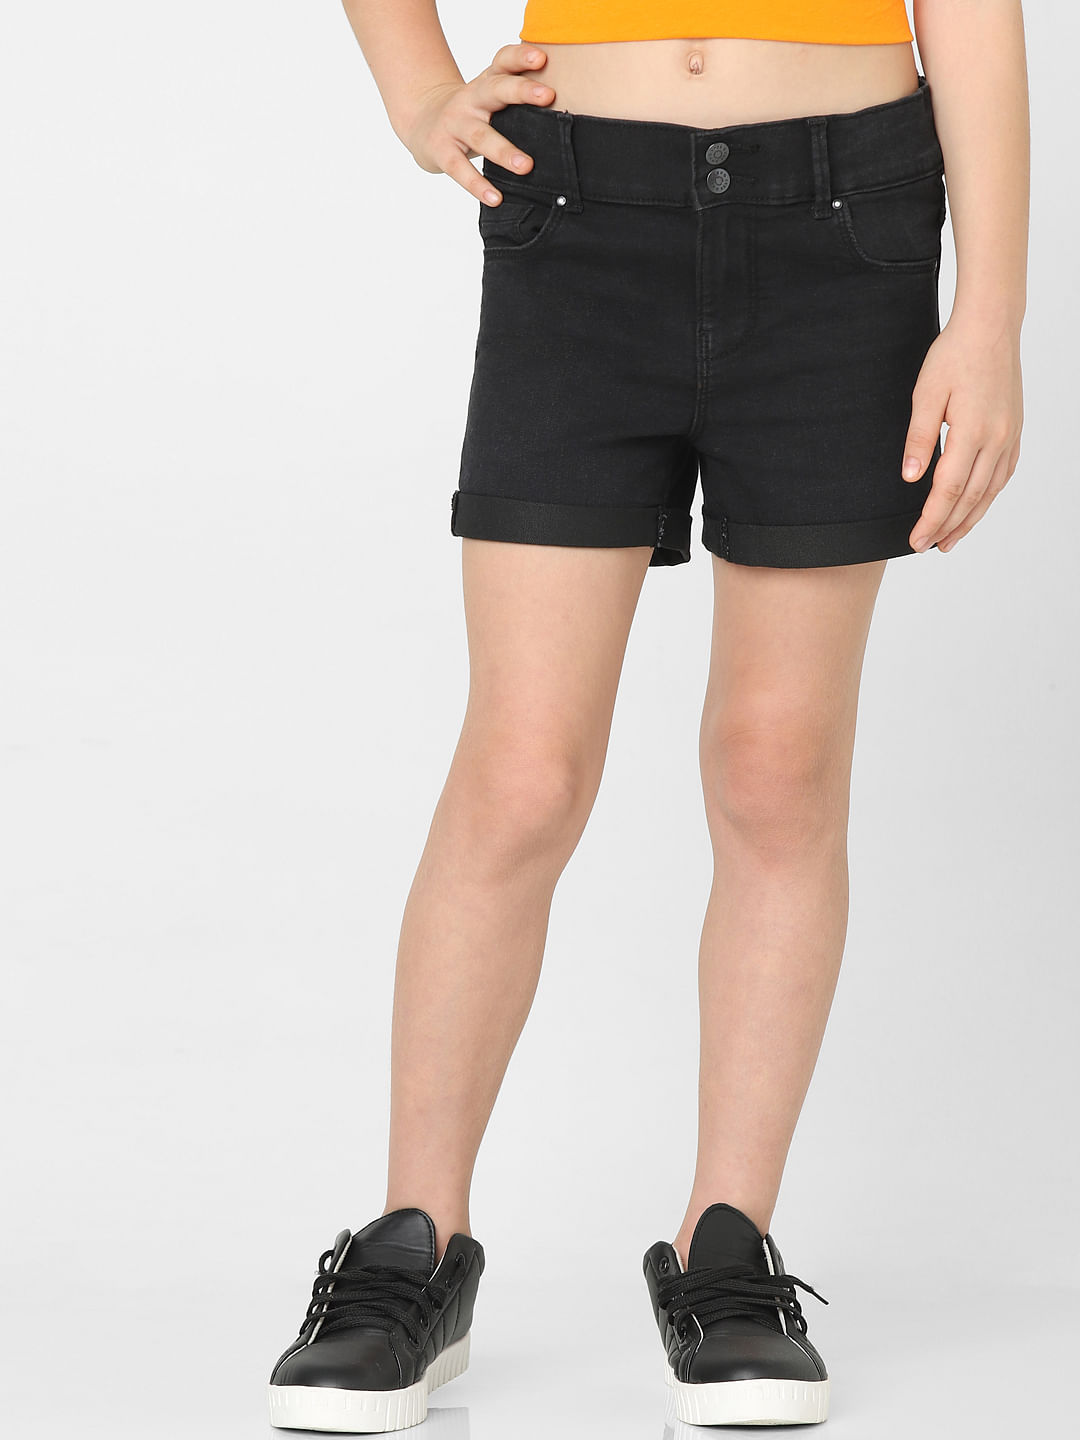 Buy Fashionoliq Women Ripped Frayed Hem Denim Black Shorts (S) at Amazon.in